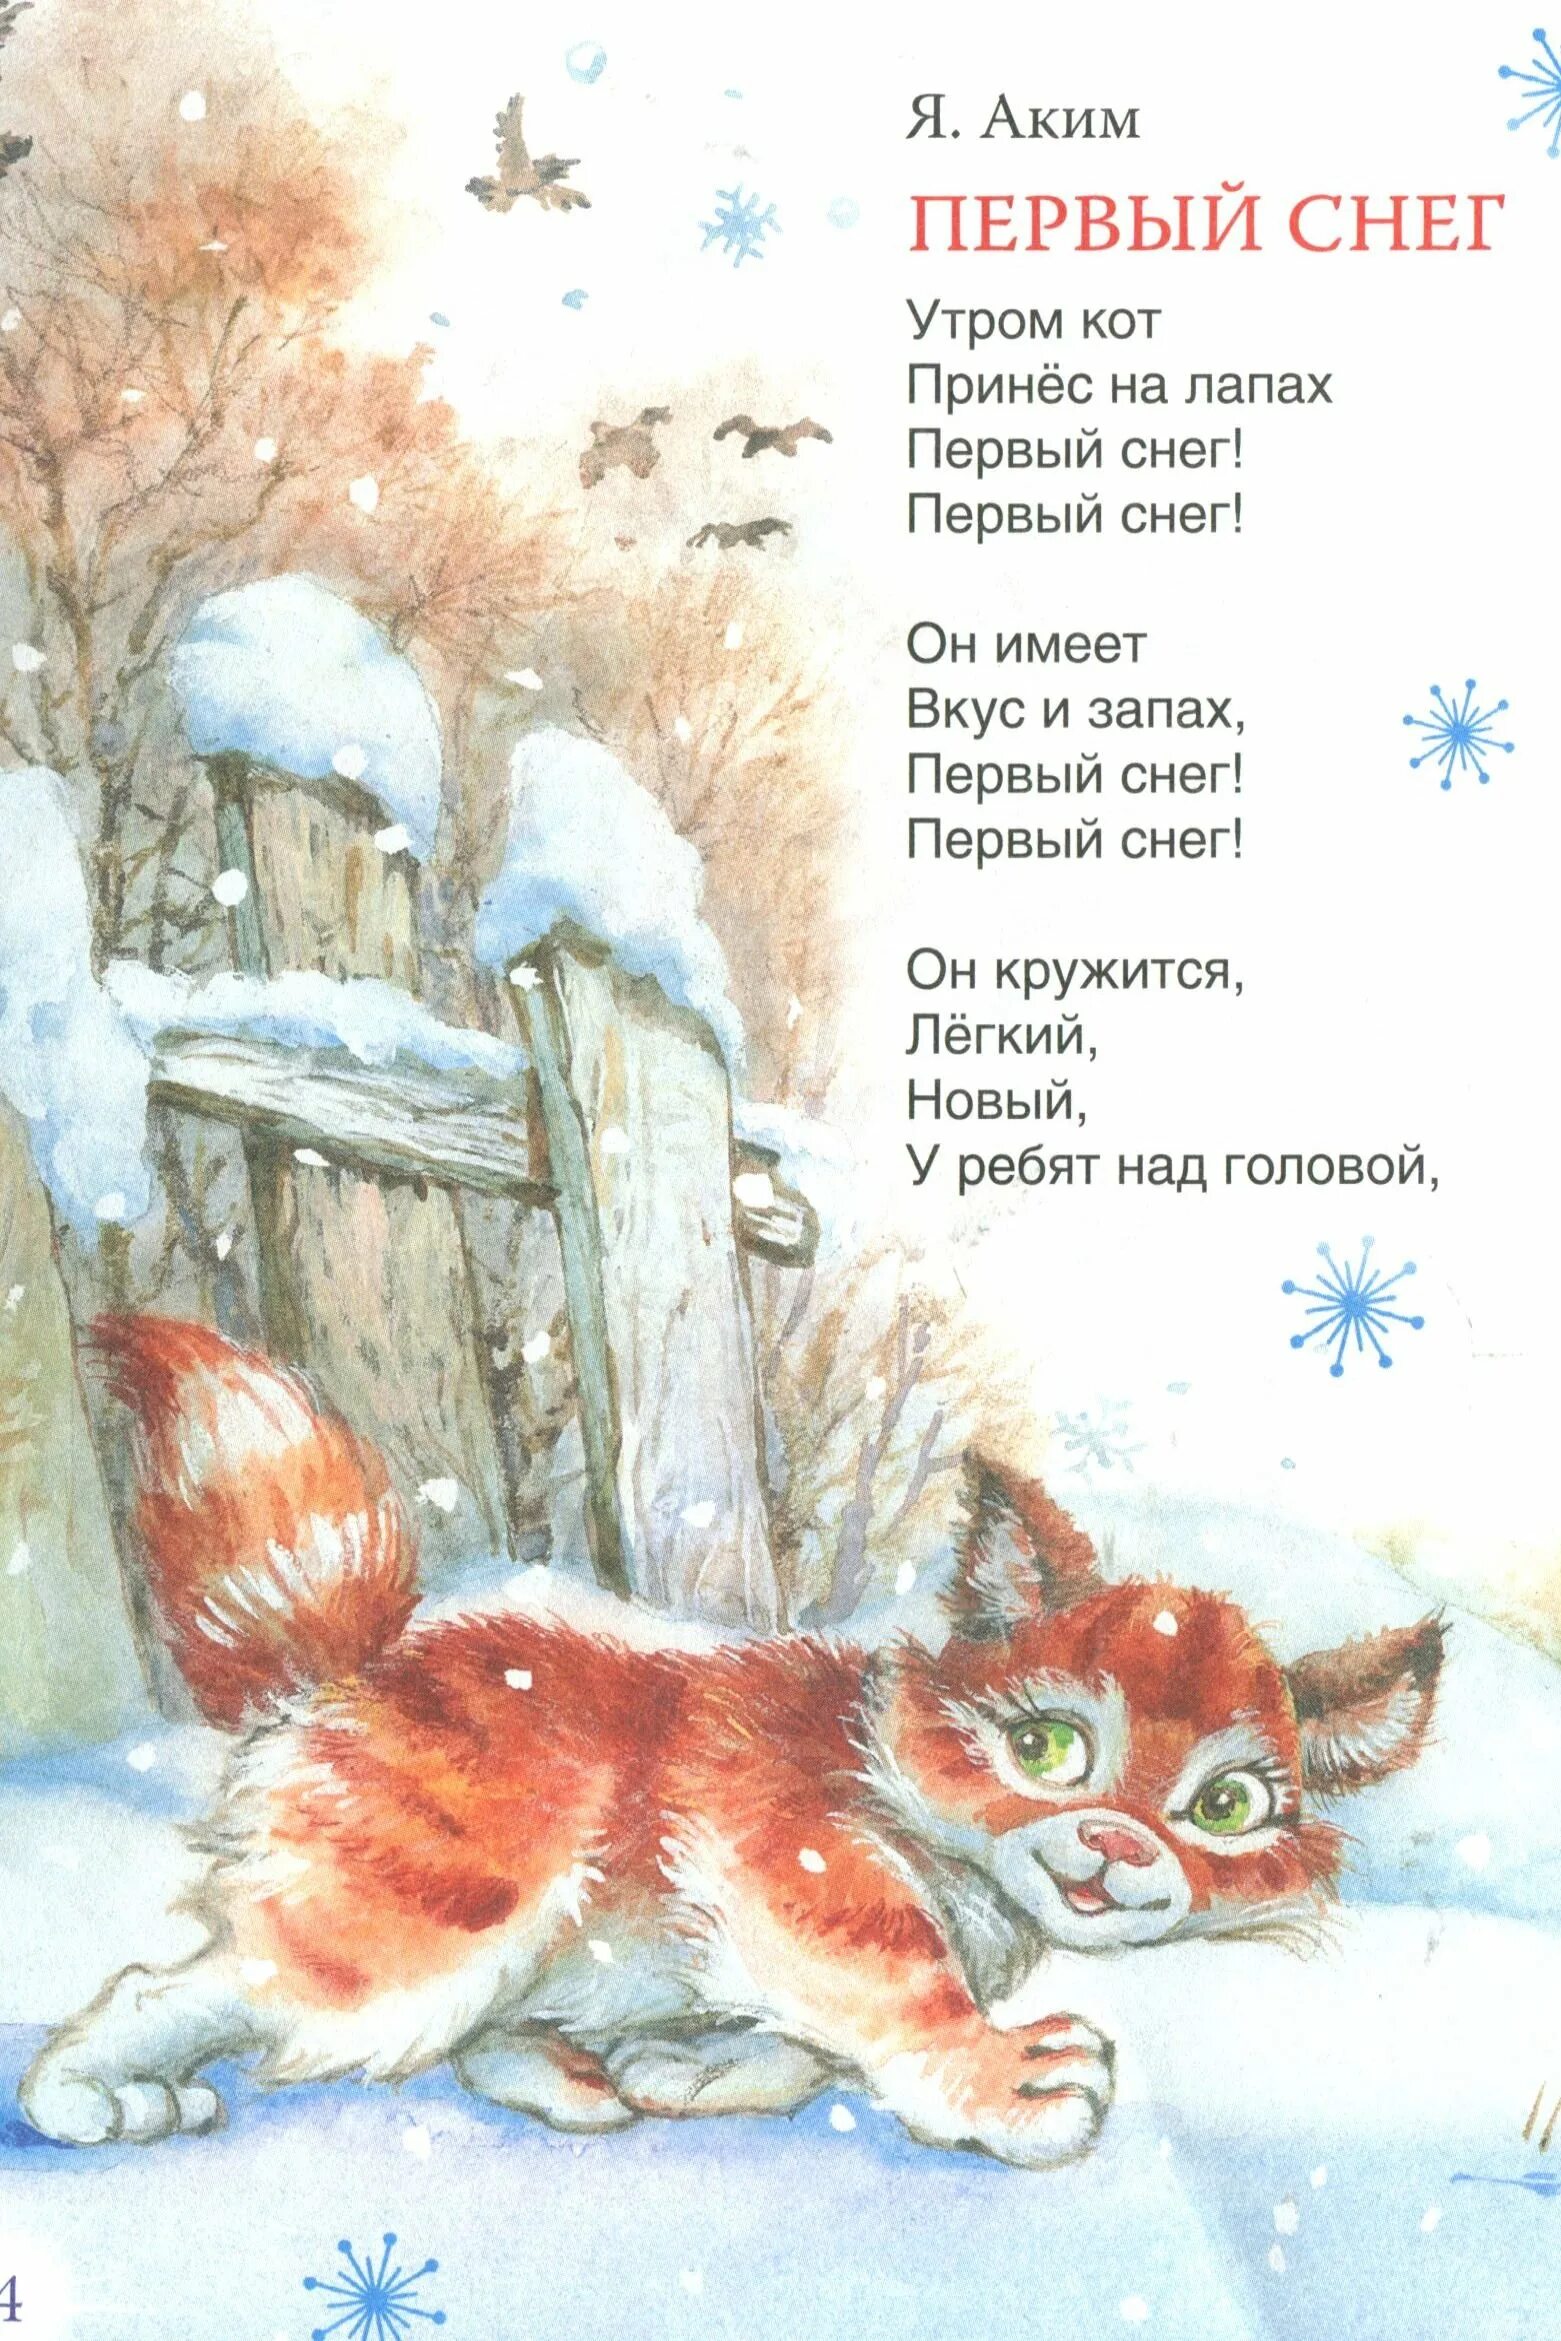 Первый снег стих. Утром кот принес на лапах первый снег.